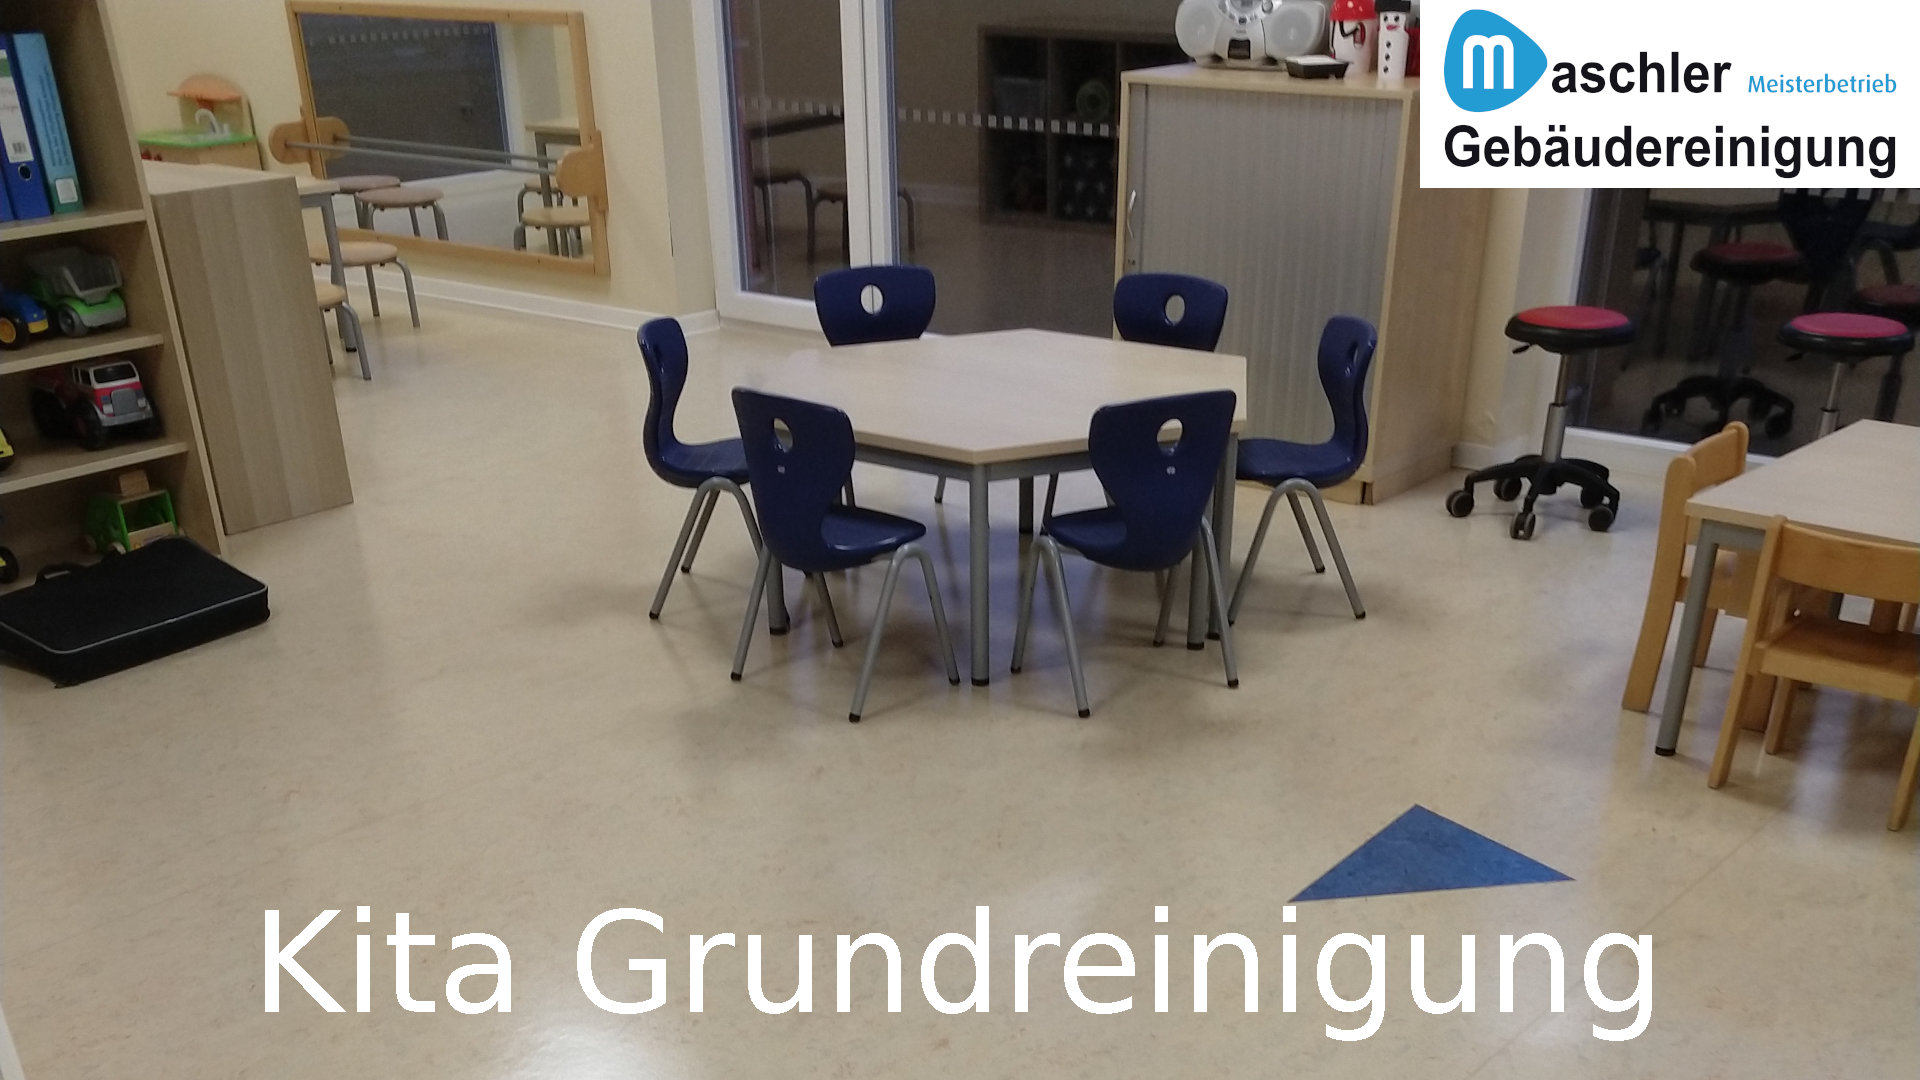 Kindergarten Grundreinigung - Gebäudereinigung Maschler Schwerin